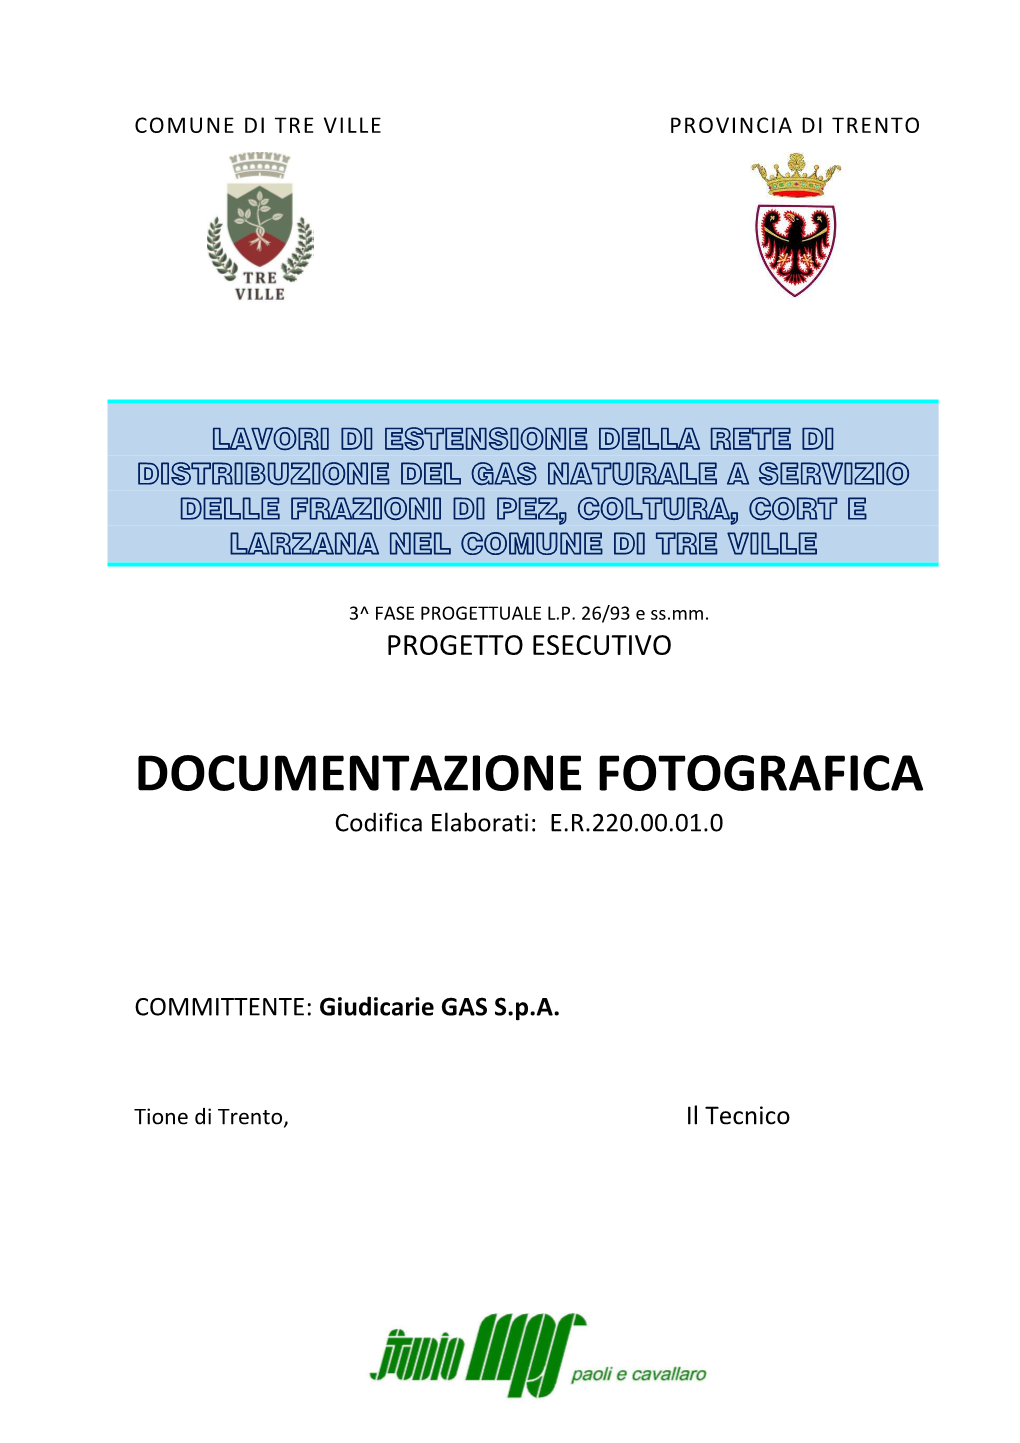 DOCUMENTAZIONE FOTOGRAFICA Codifica Elaborati: E.R.220.00.01.0